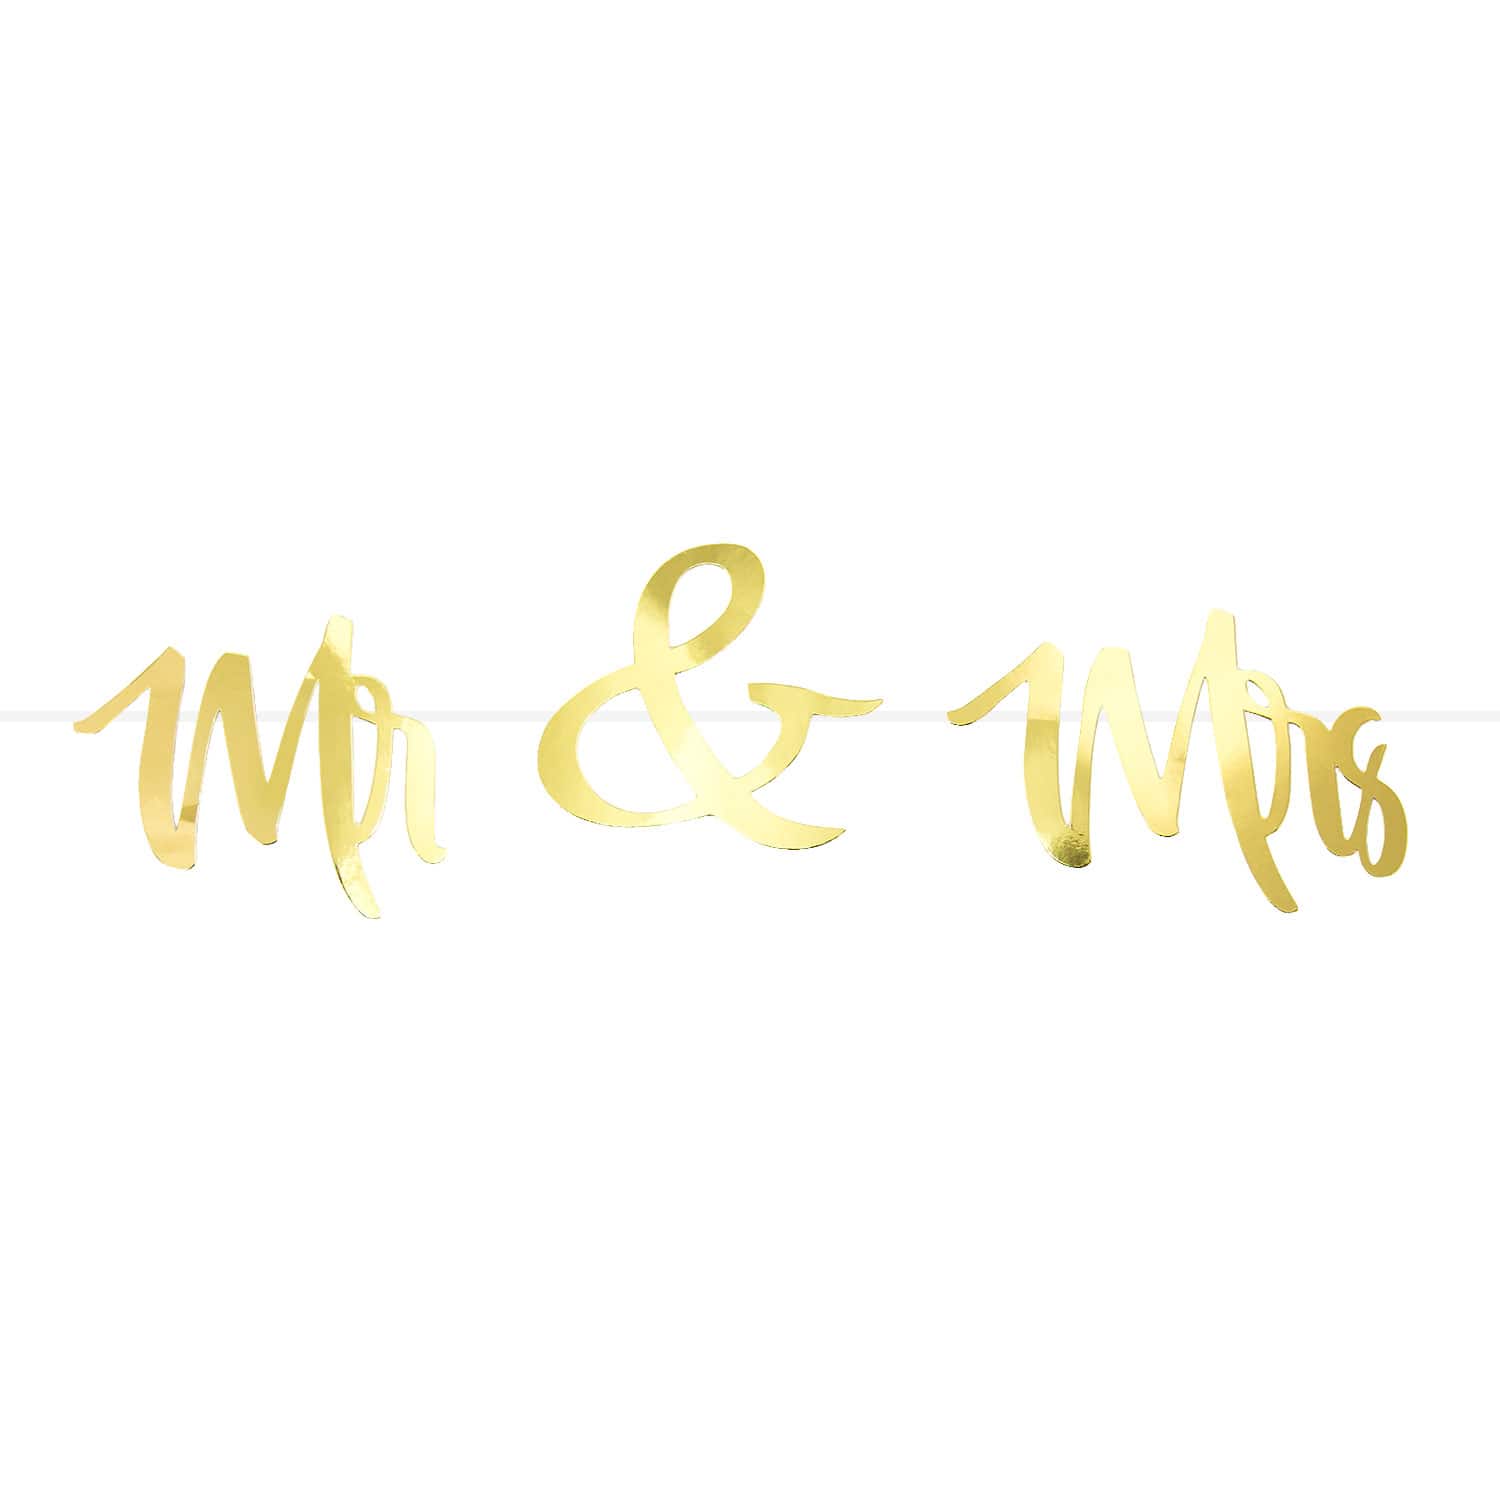 Mr & Mrs Girlande Banner Hochzeit Feier Dekoration Hochzeitsdeko  Hochzeitsgirlande - gold